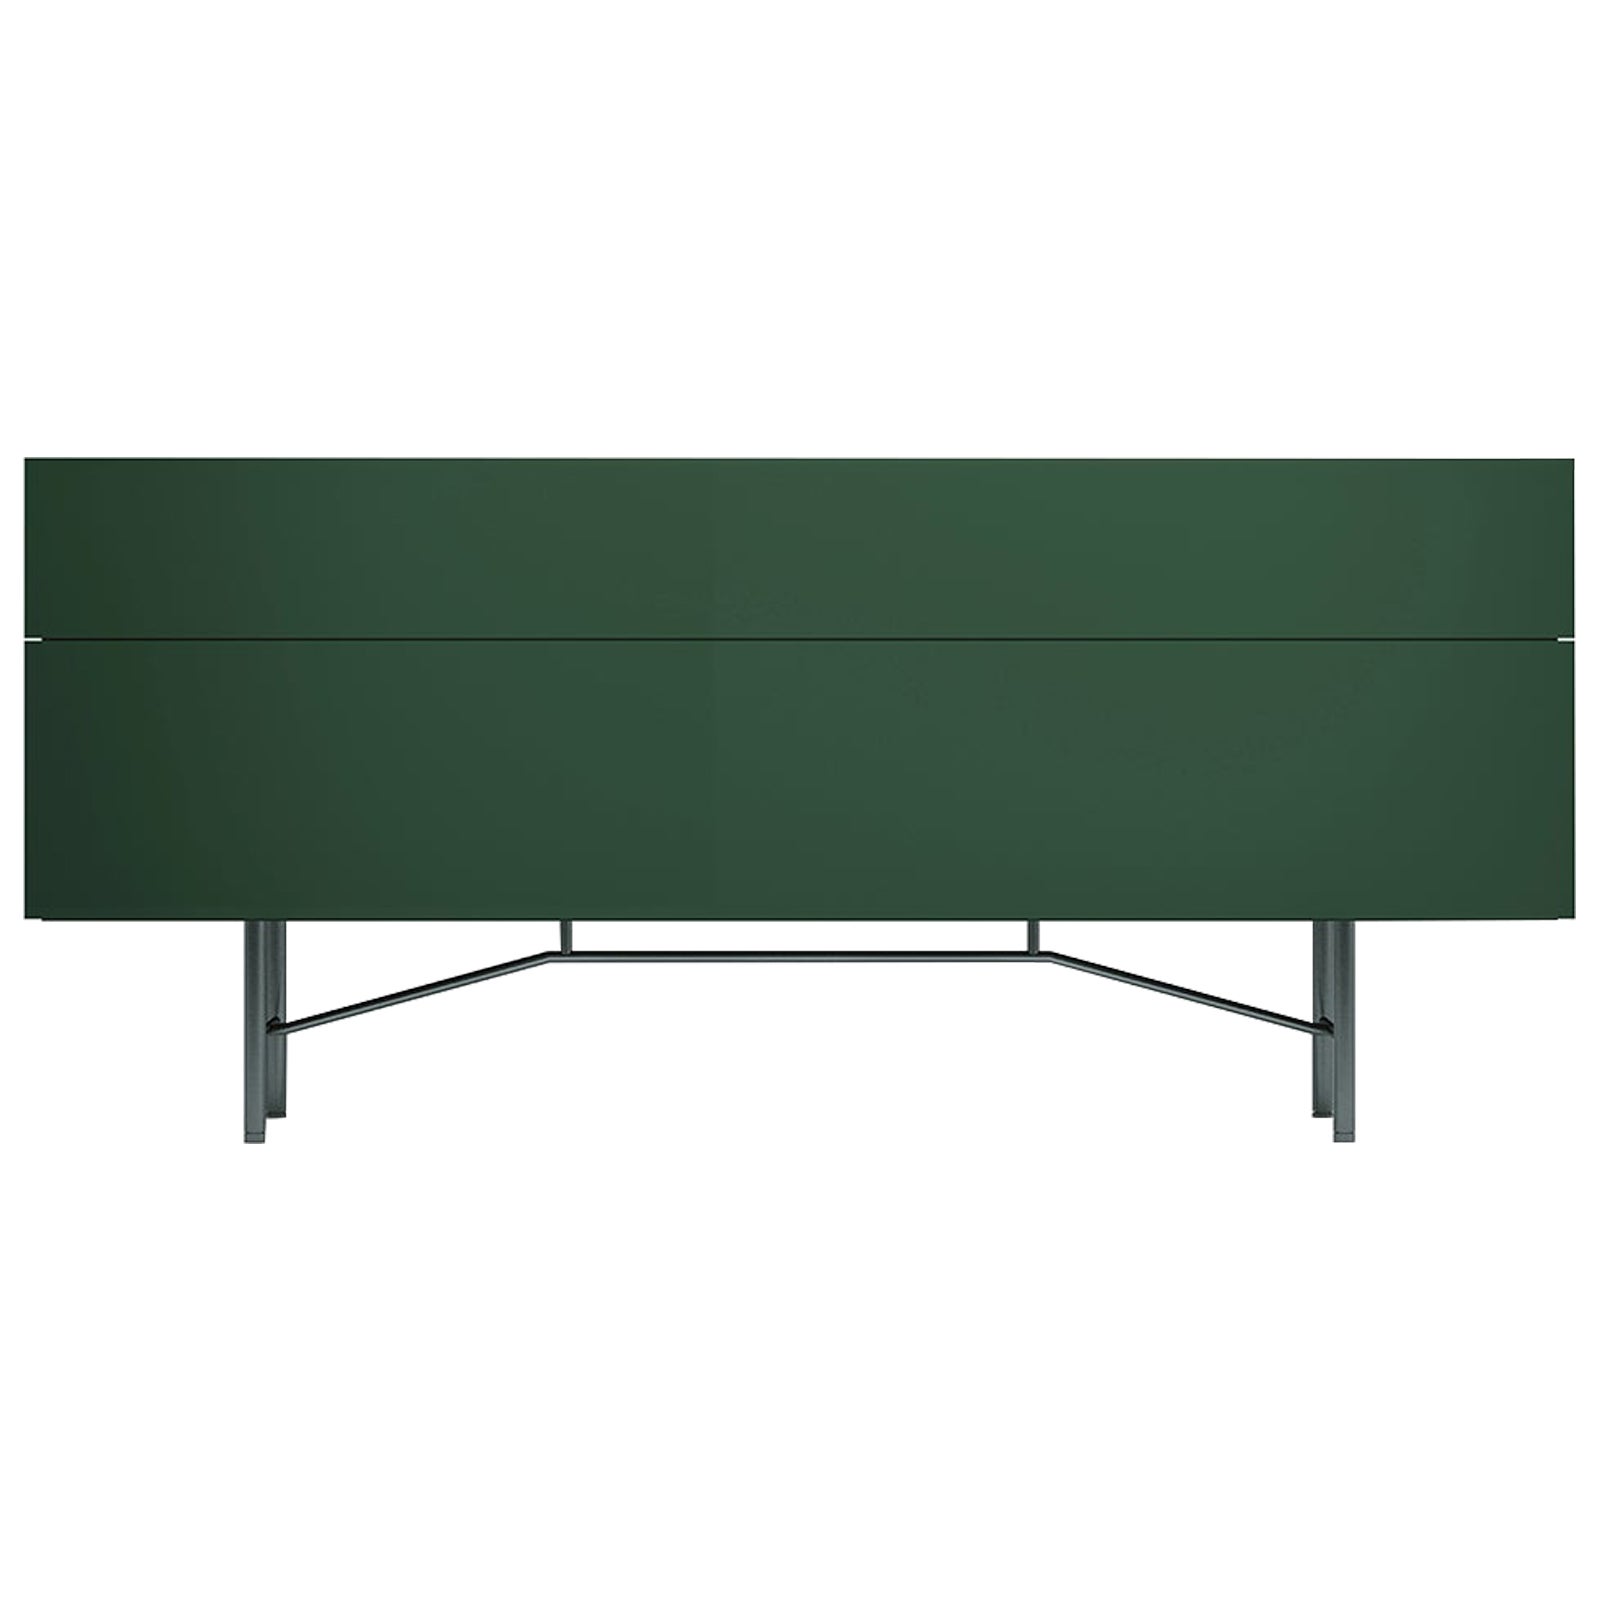 Acerbis Kleines Grand Buffet Sideboard in glänzendem lackiertem dunkelgrünem und grauem Rahmen